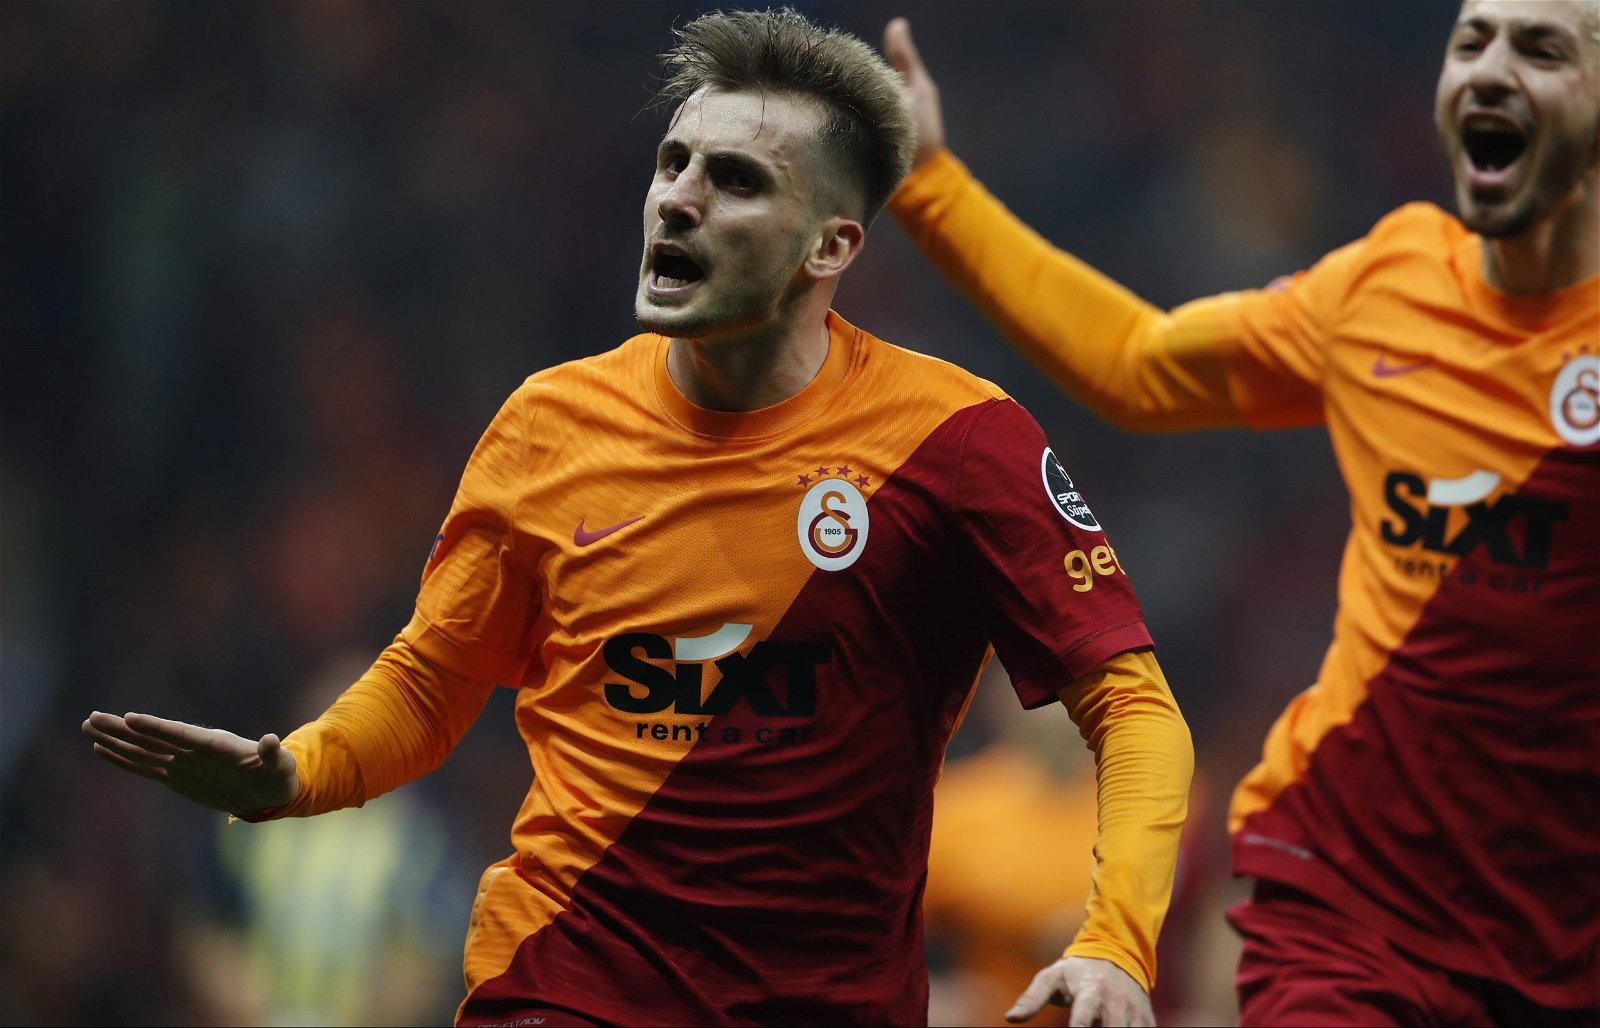 Arsenal interested in Galatasaray star Kerem Akturkoglu